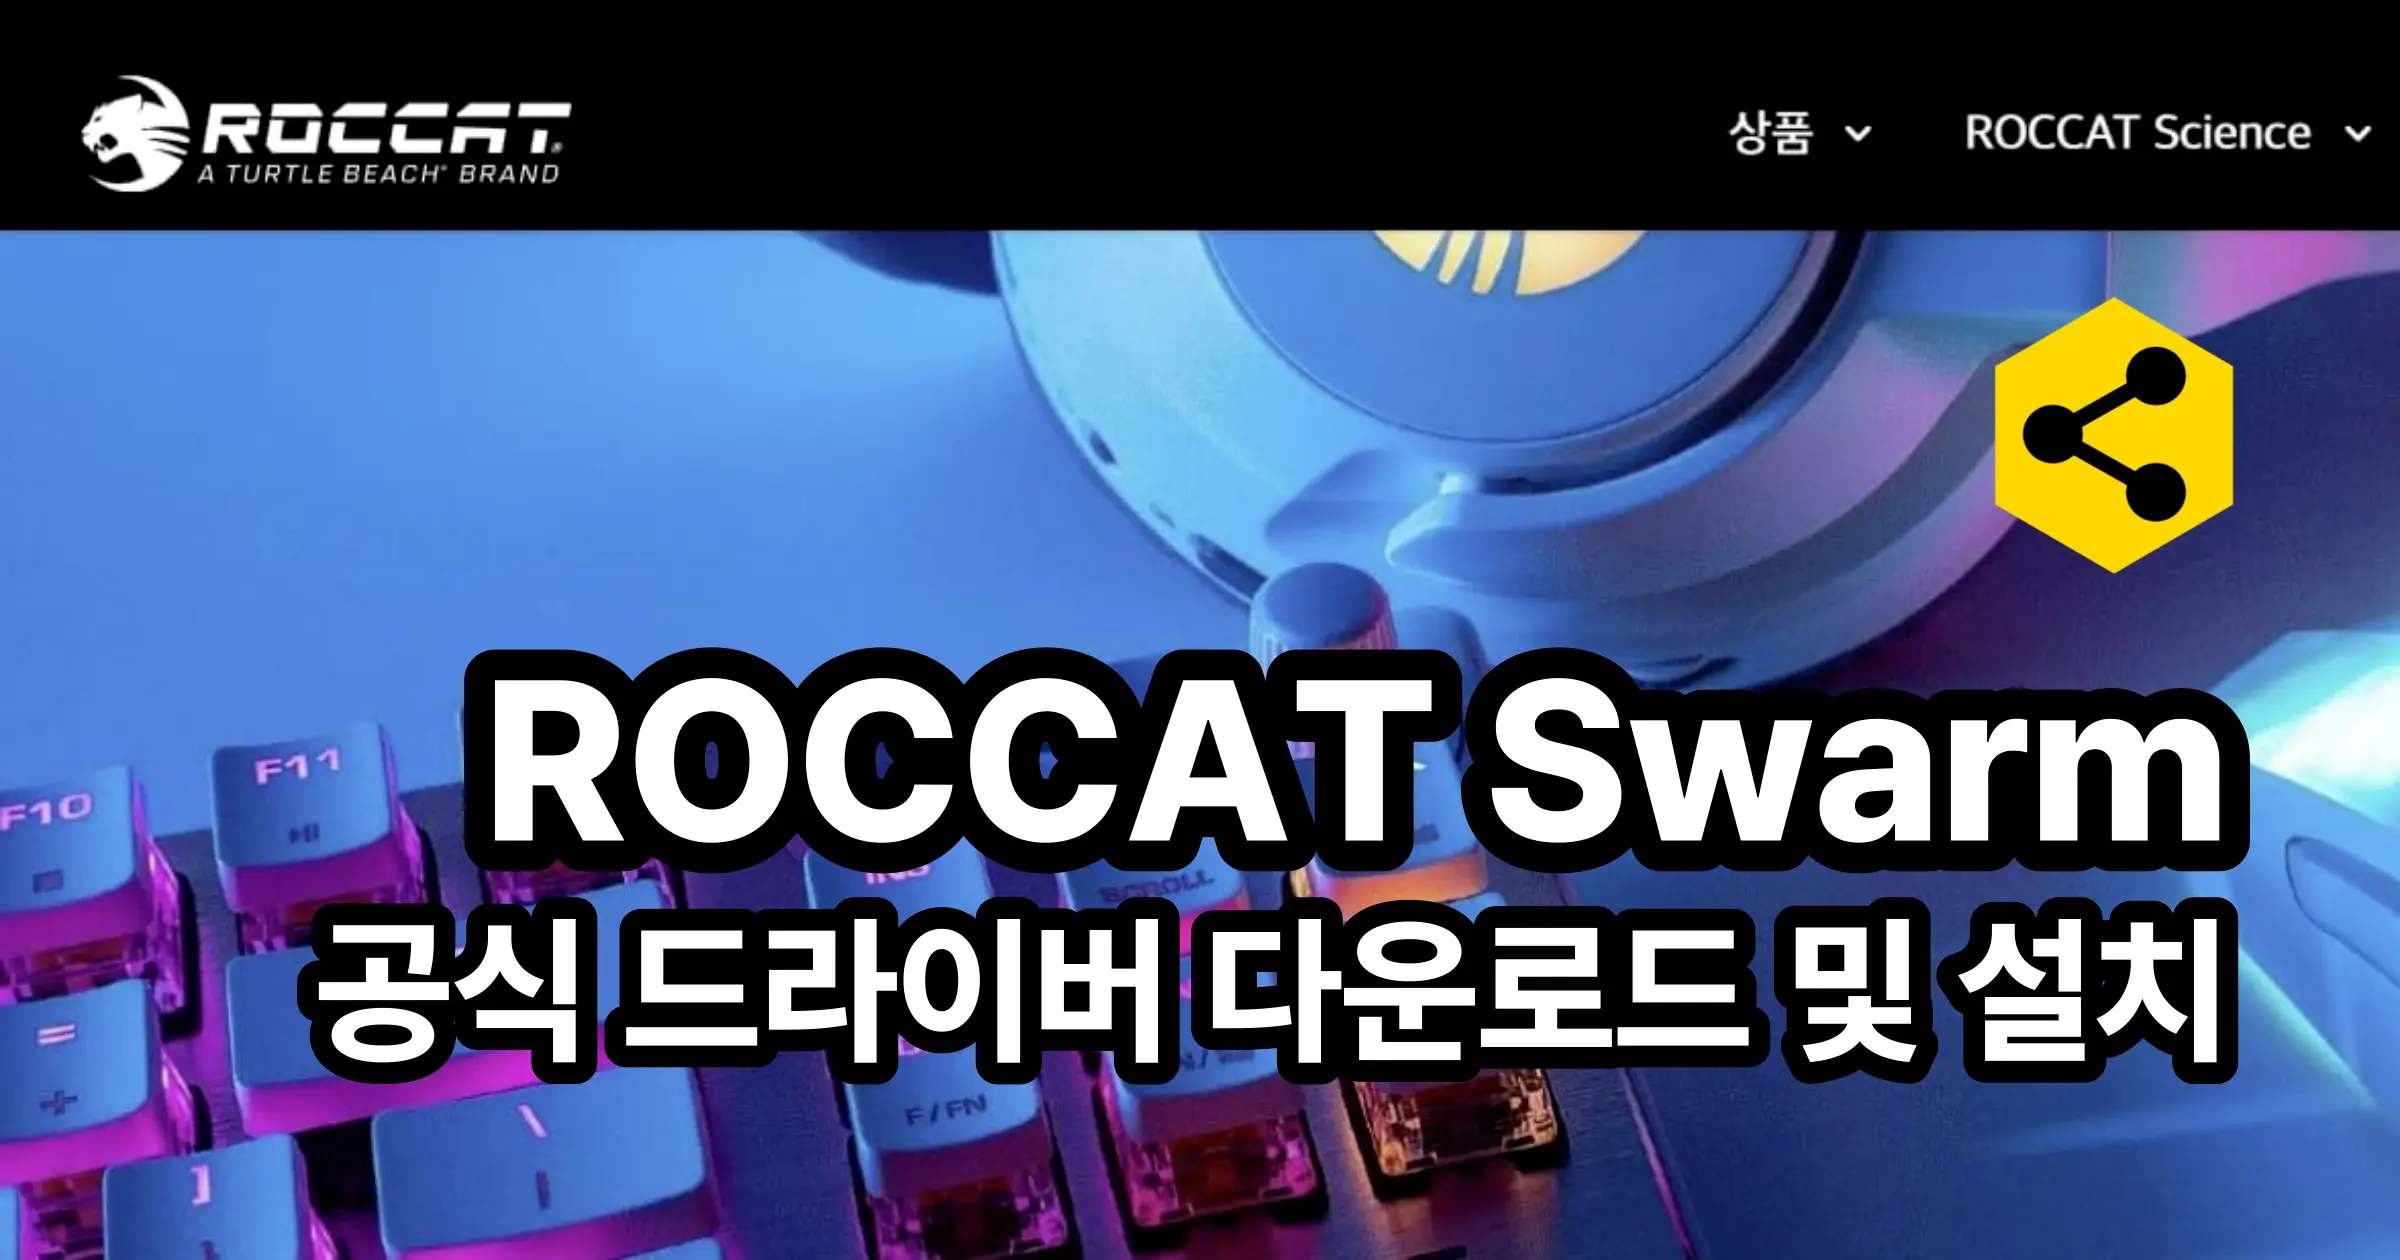 ROCCAT Swarm 공식 드라이버 다운로드 및 설치1414